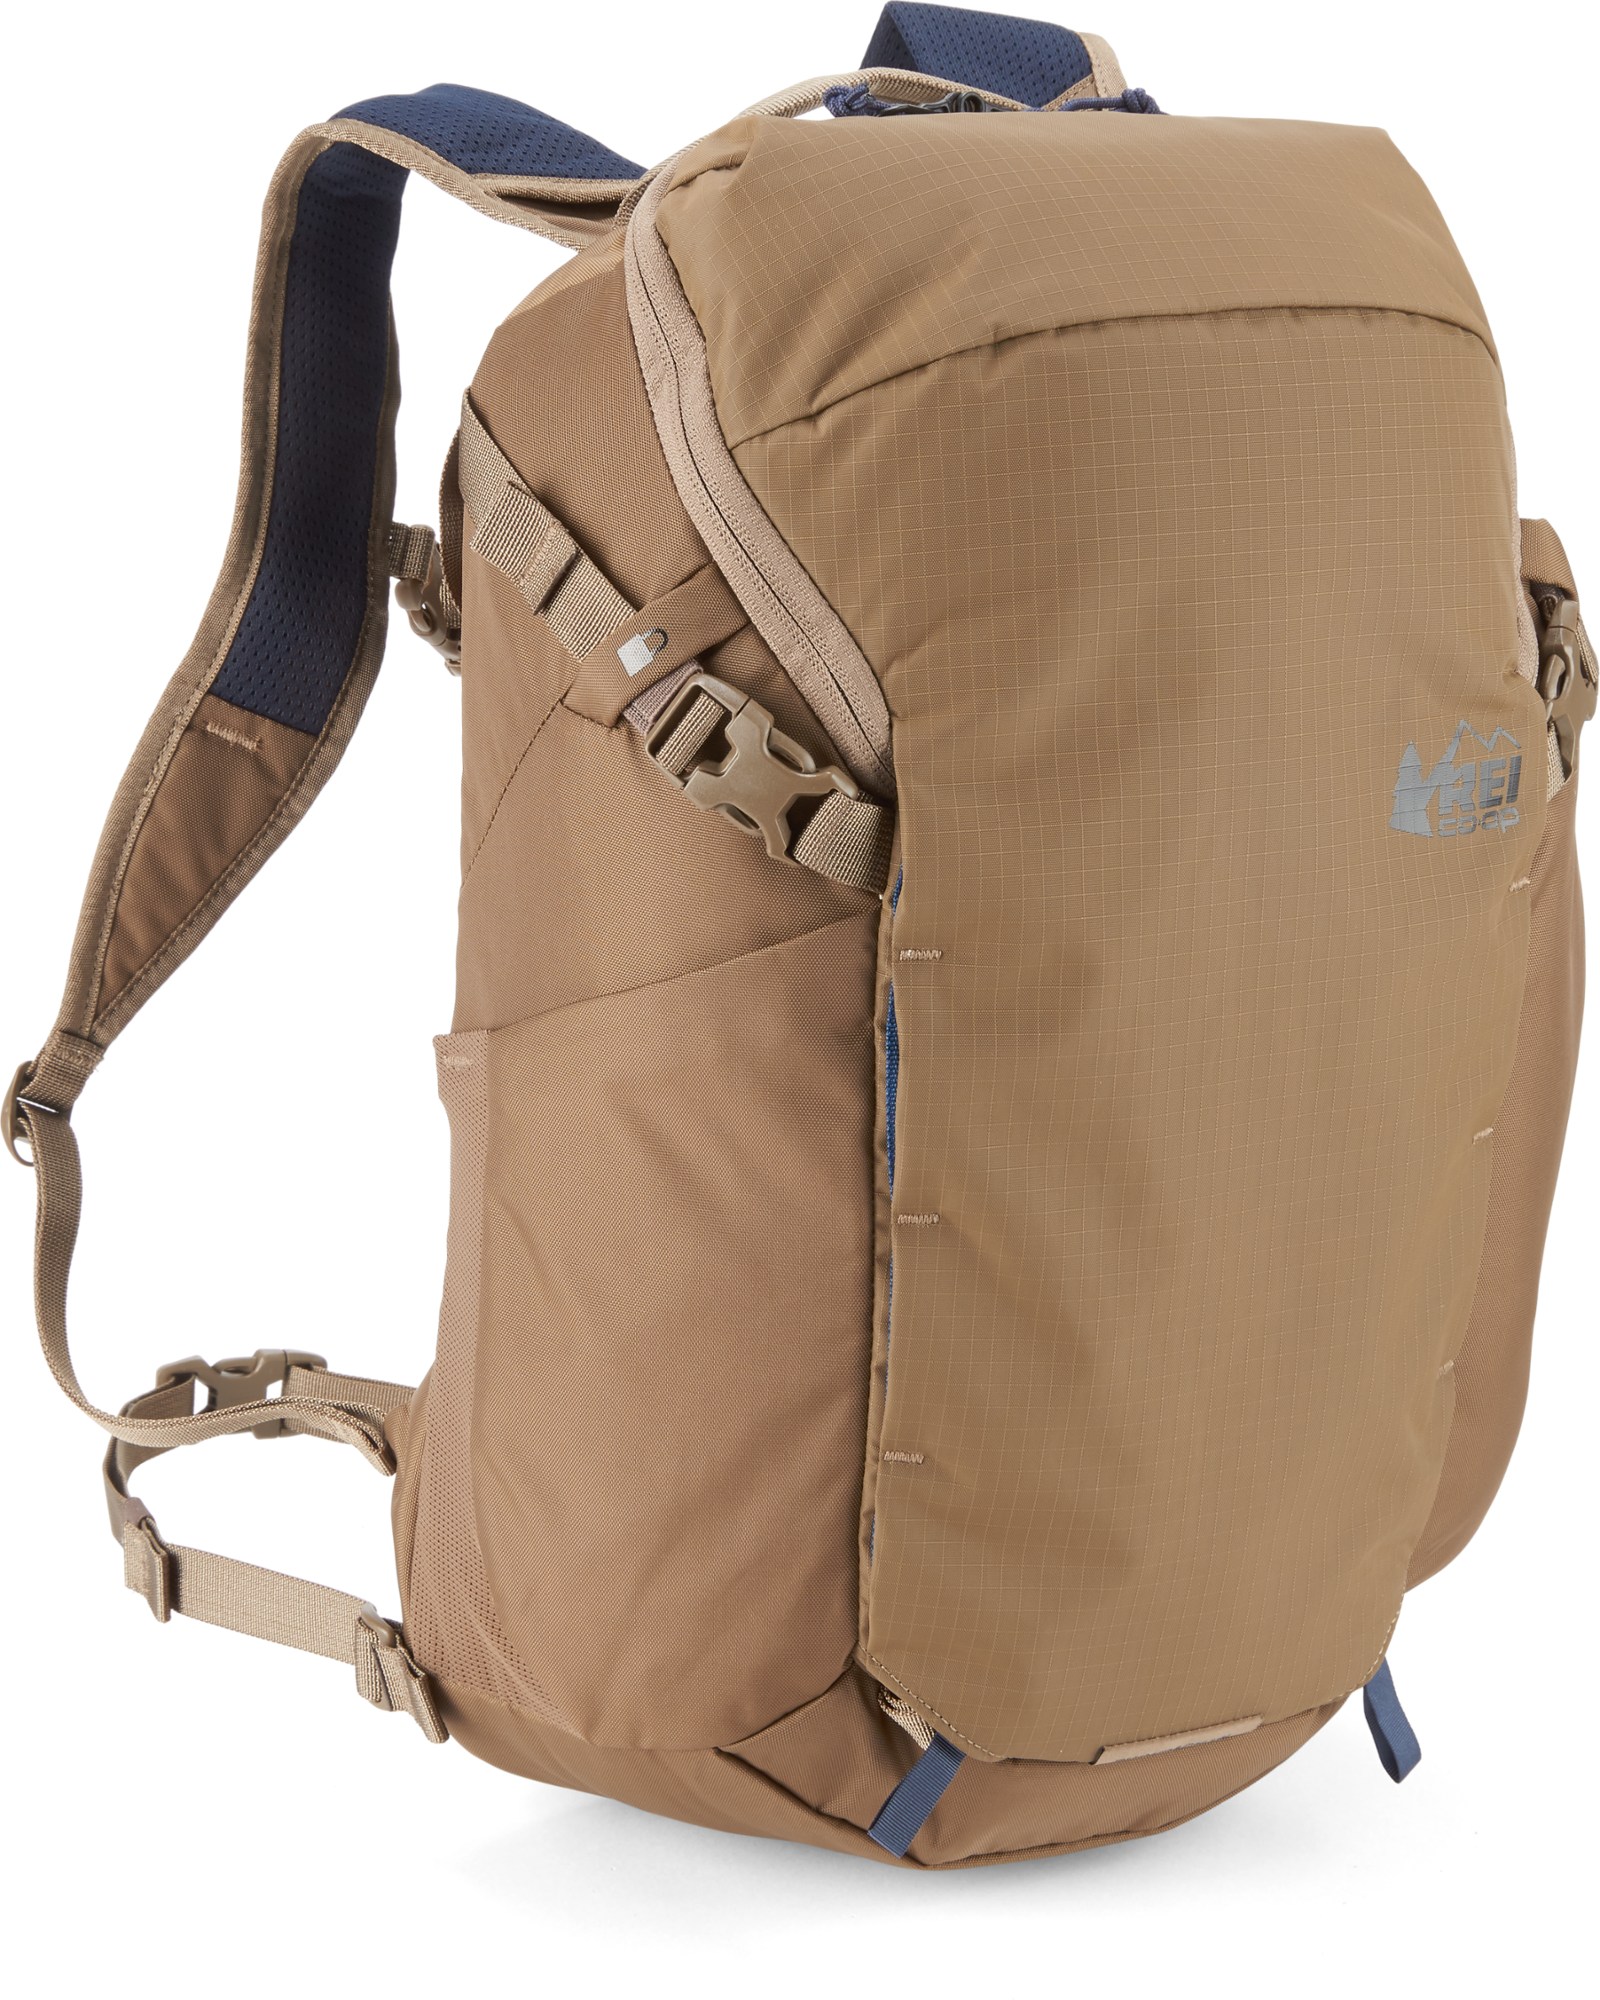 Рюкзак Ruckpack 18 из переработанного материала REI Co-op, коричневый рюкзак туристический airport синий 18 л